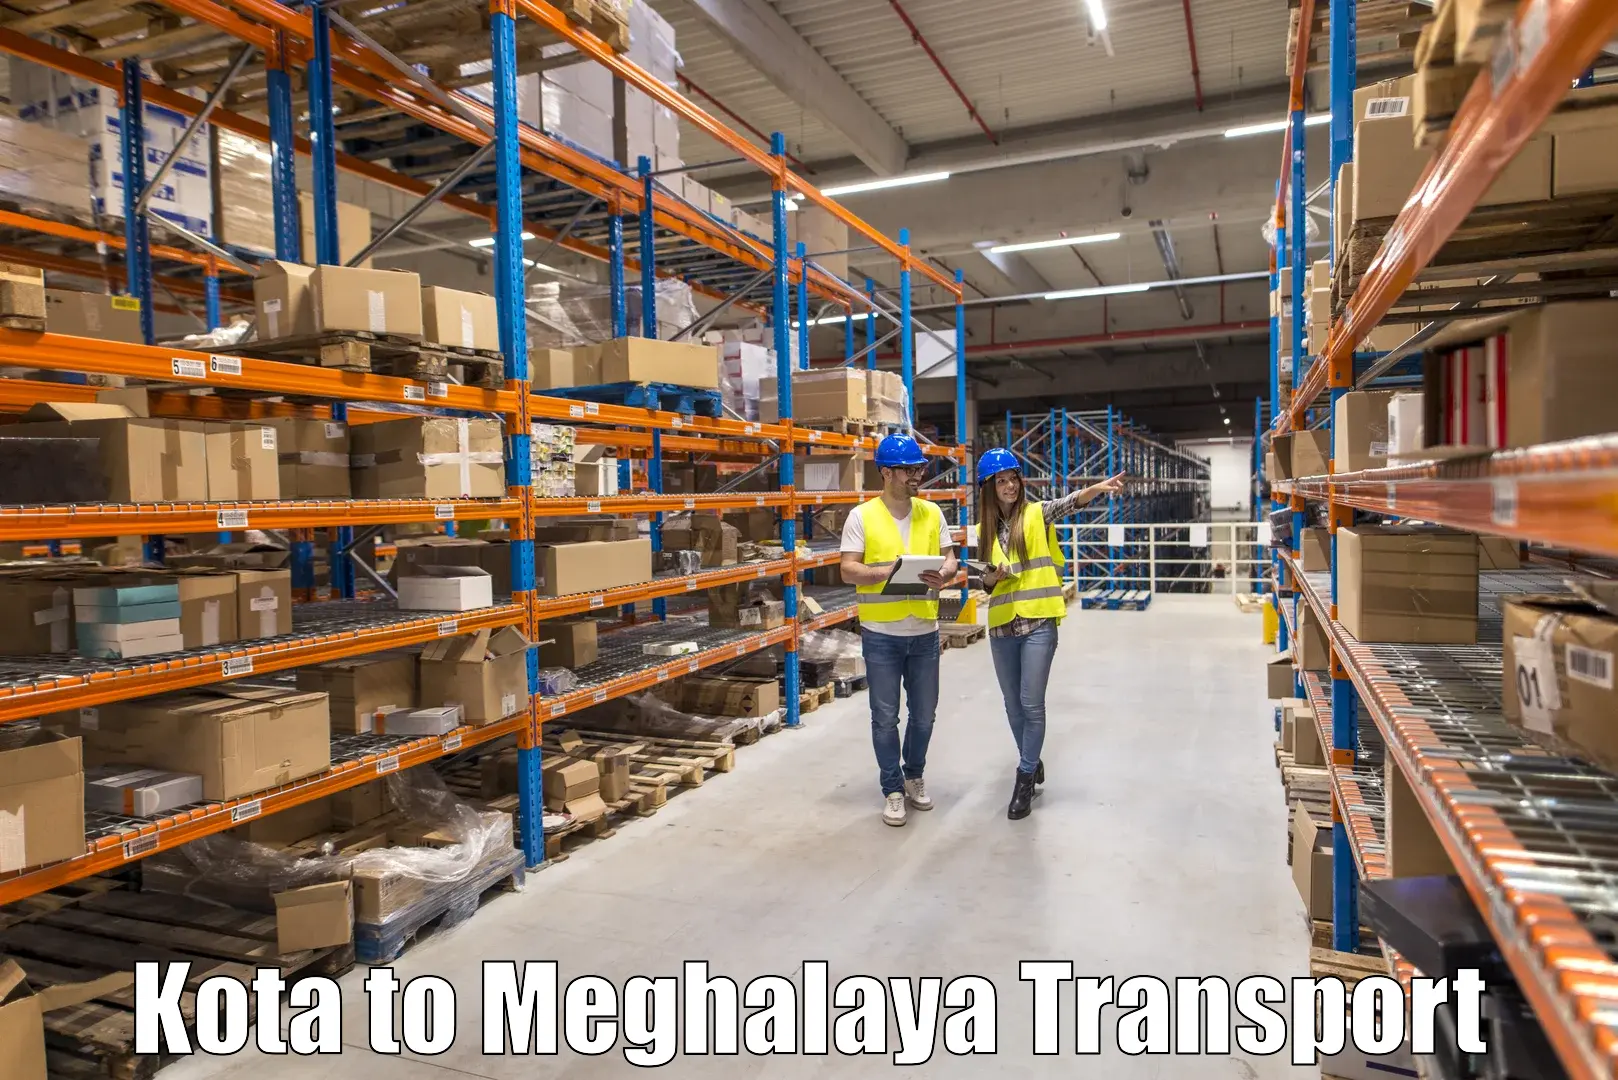 Transport in sharing Kota to Dkhiah West